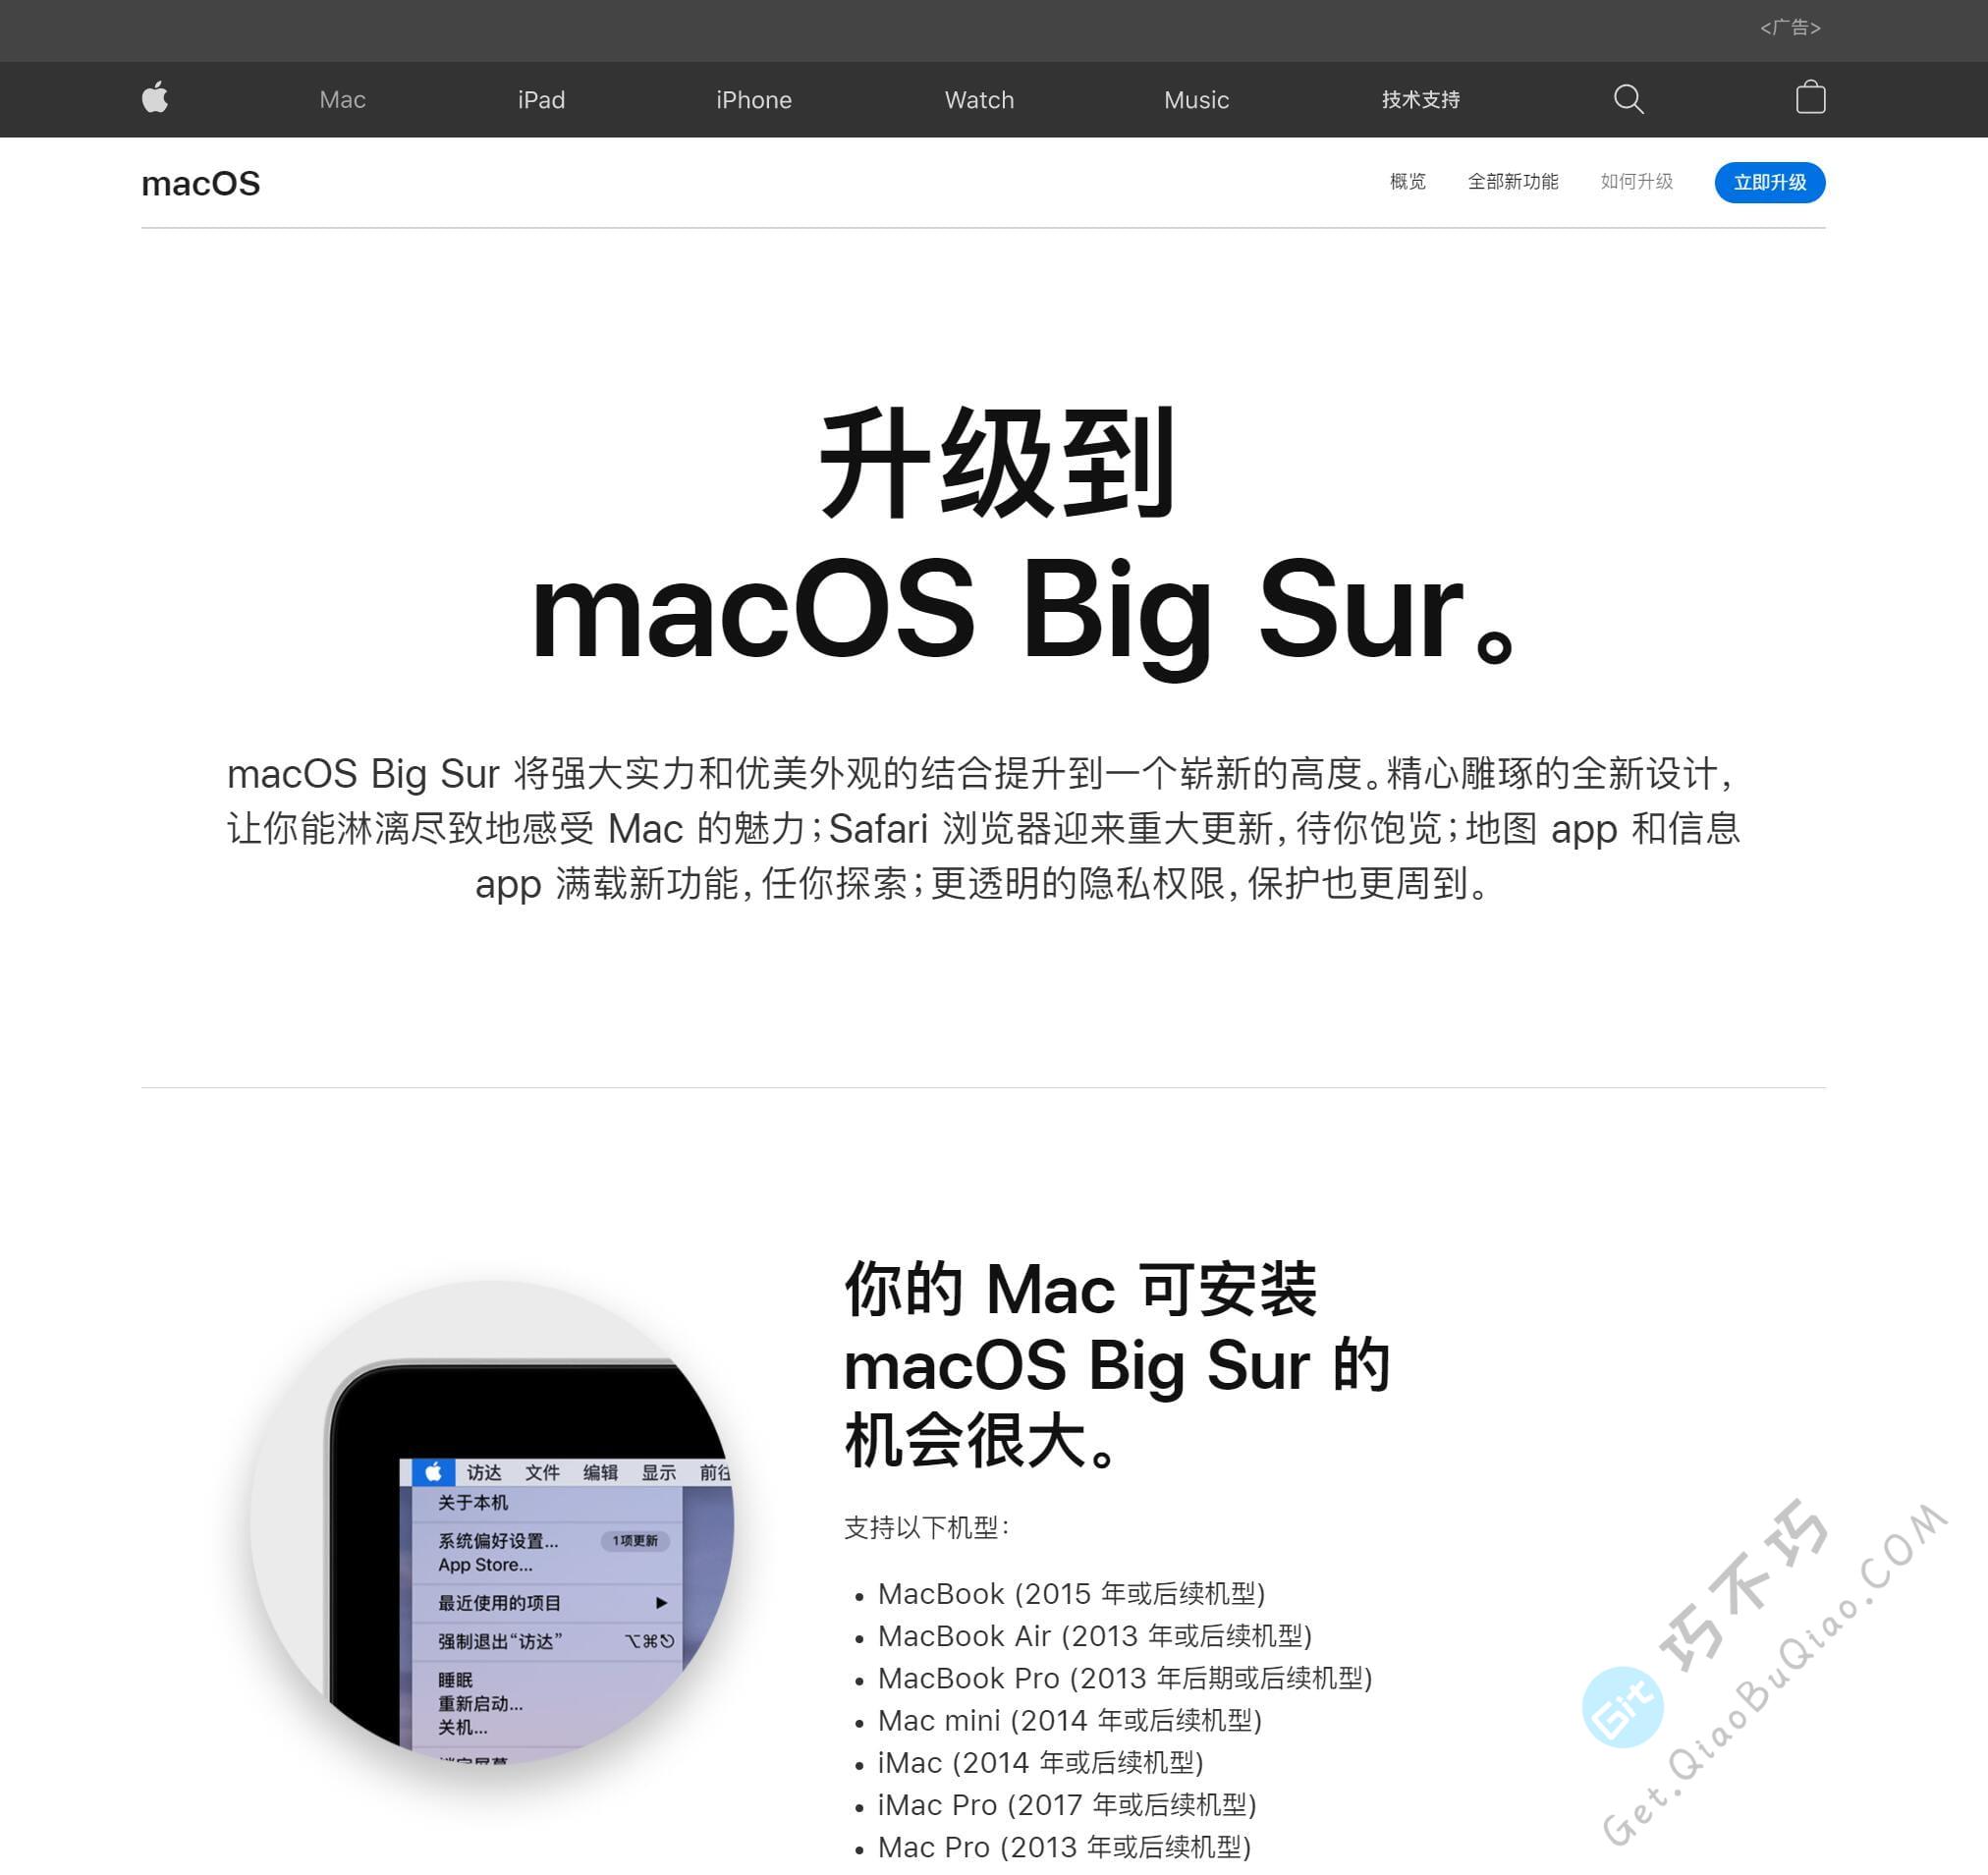 下载苹果MacOS系统，如何知道目前最新版本是哪一个，如何找到ISO、DMG镜像